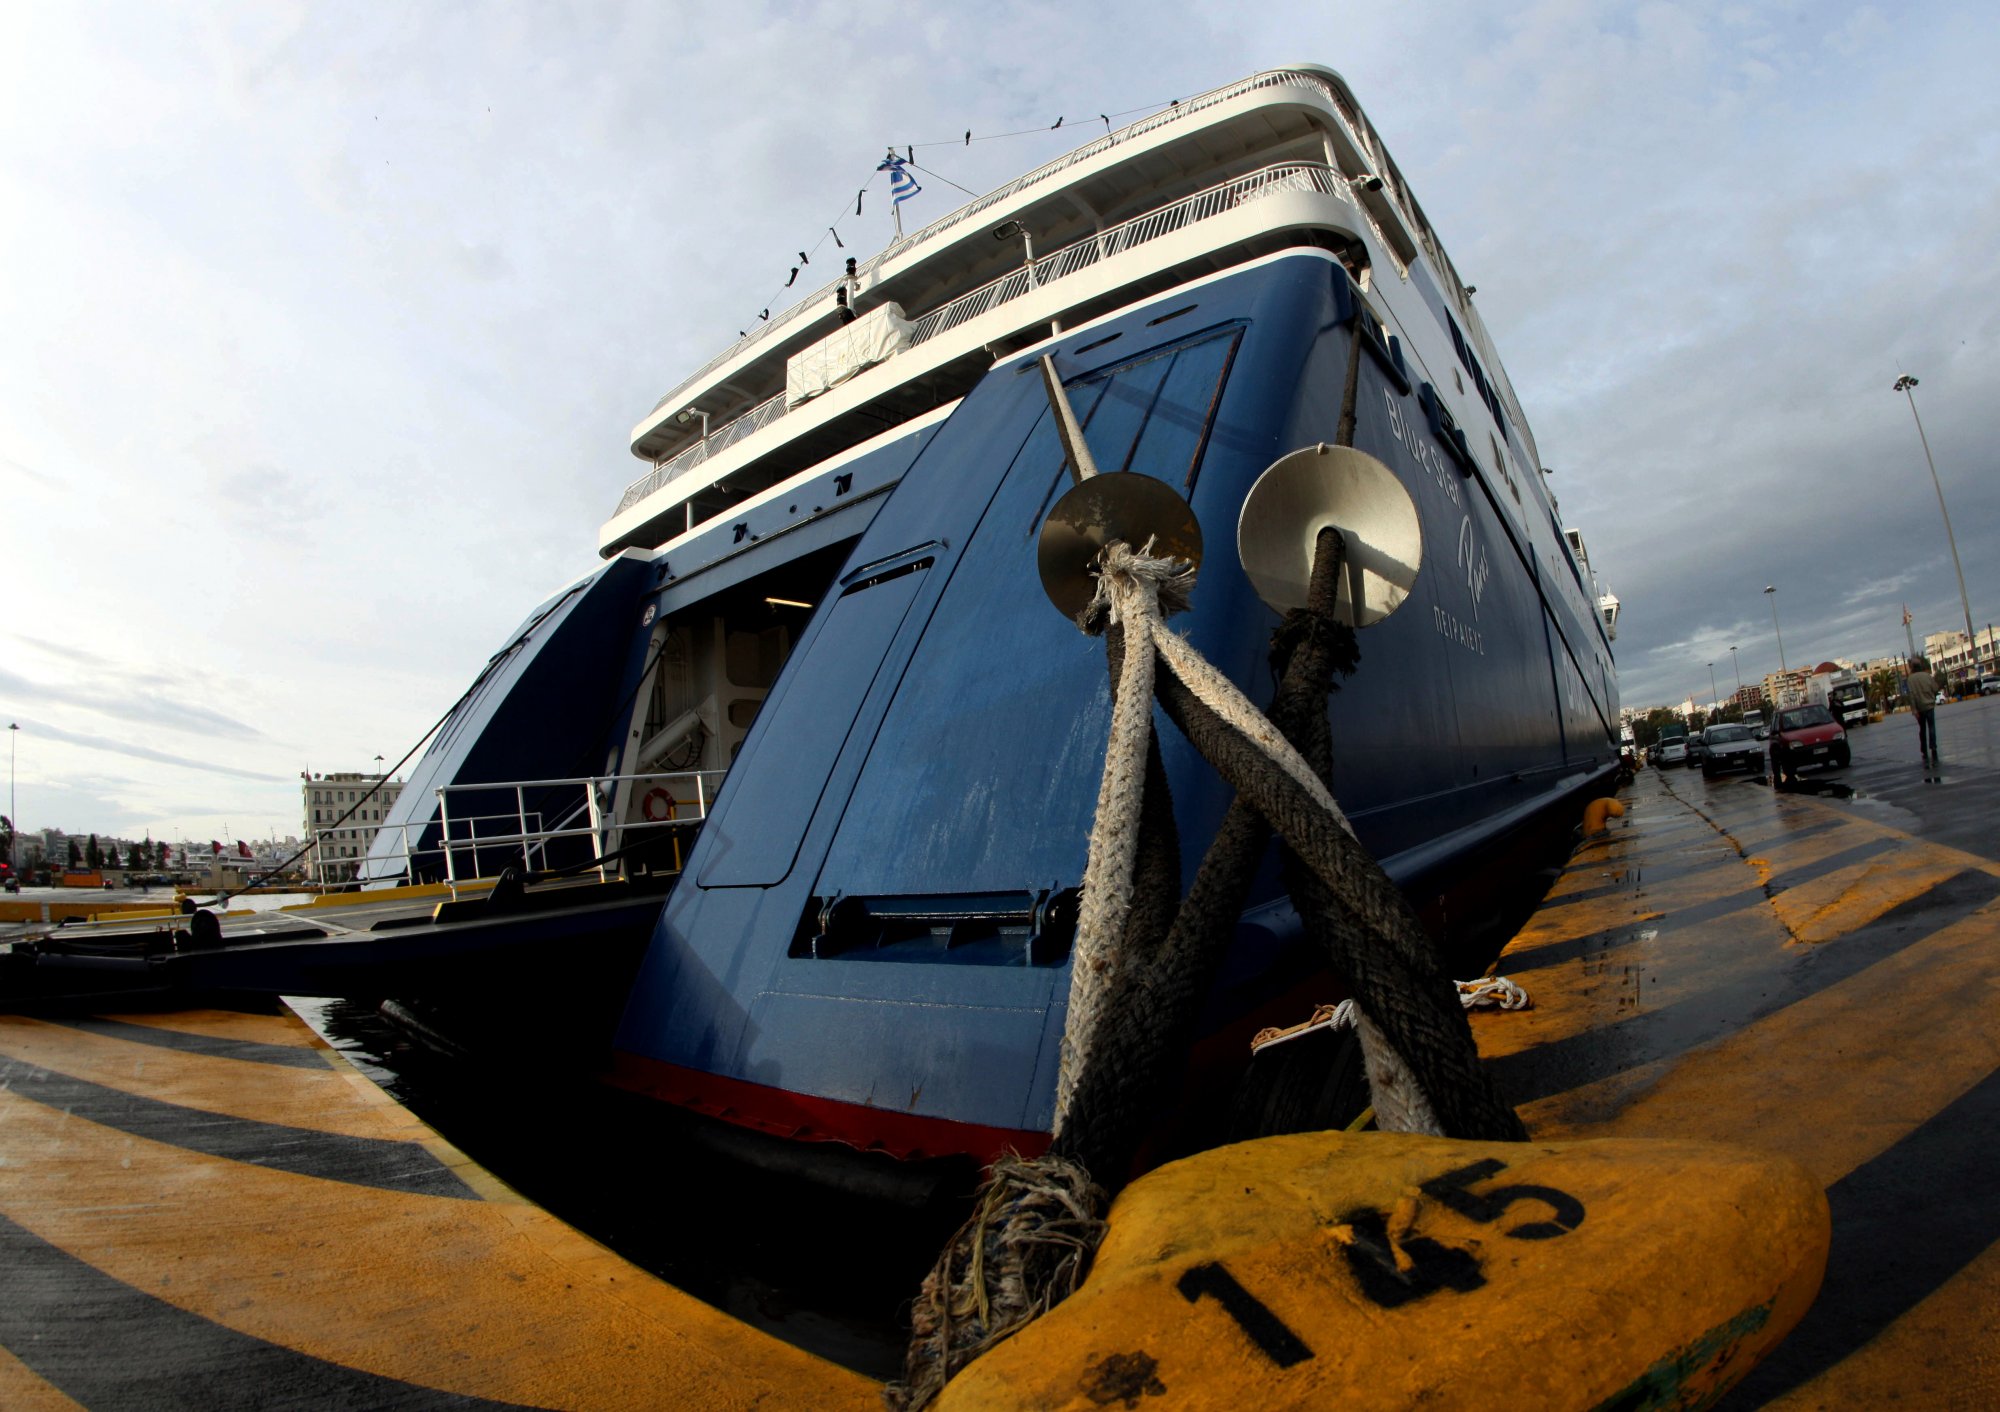 Πειραιάς: Πλοίο με 453 επιβάτες επέστρεψε εκτάκτως στο λιμάνι - Τι συνέβη